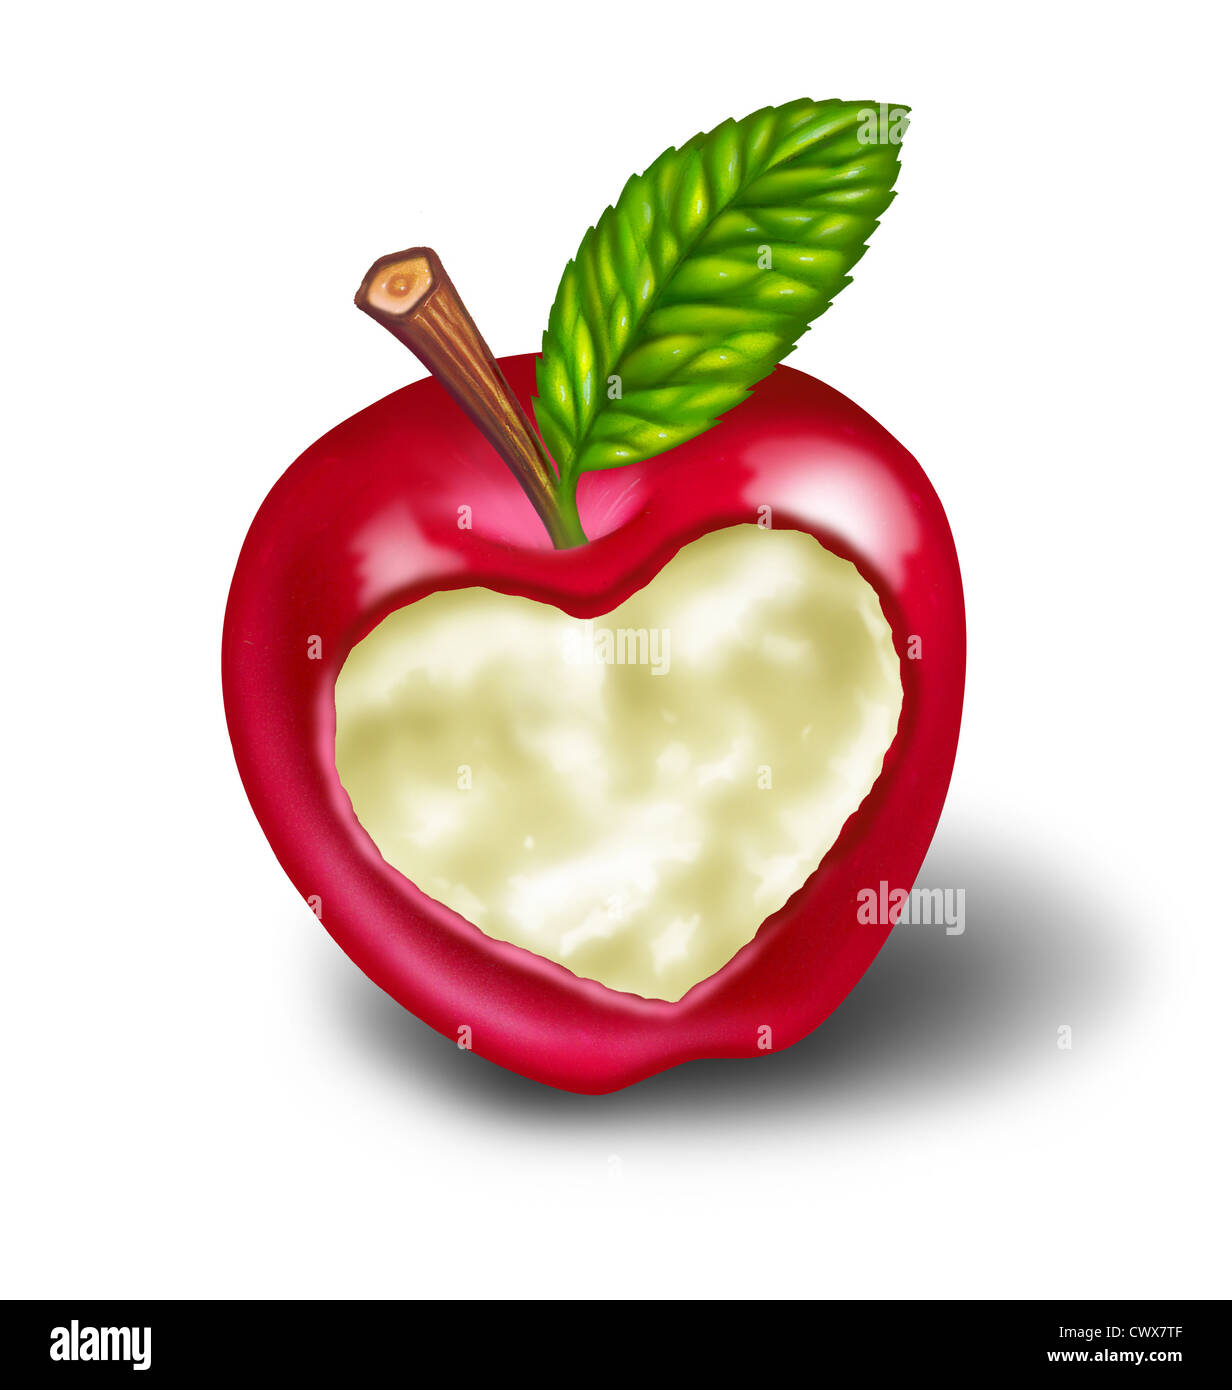 Suivre un régime et un mode de vie sain régime normal de nourriture avec une pomme rouge avec une forme de coeur sculpté dans la maturité des fruits délicieux comme un Banque D'Images